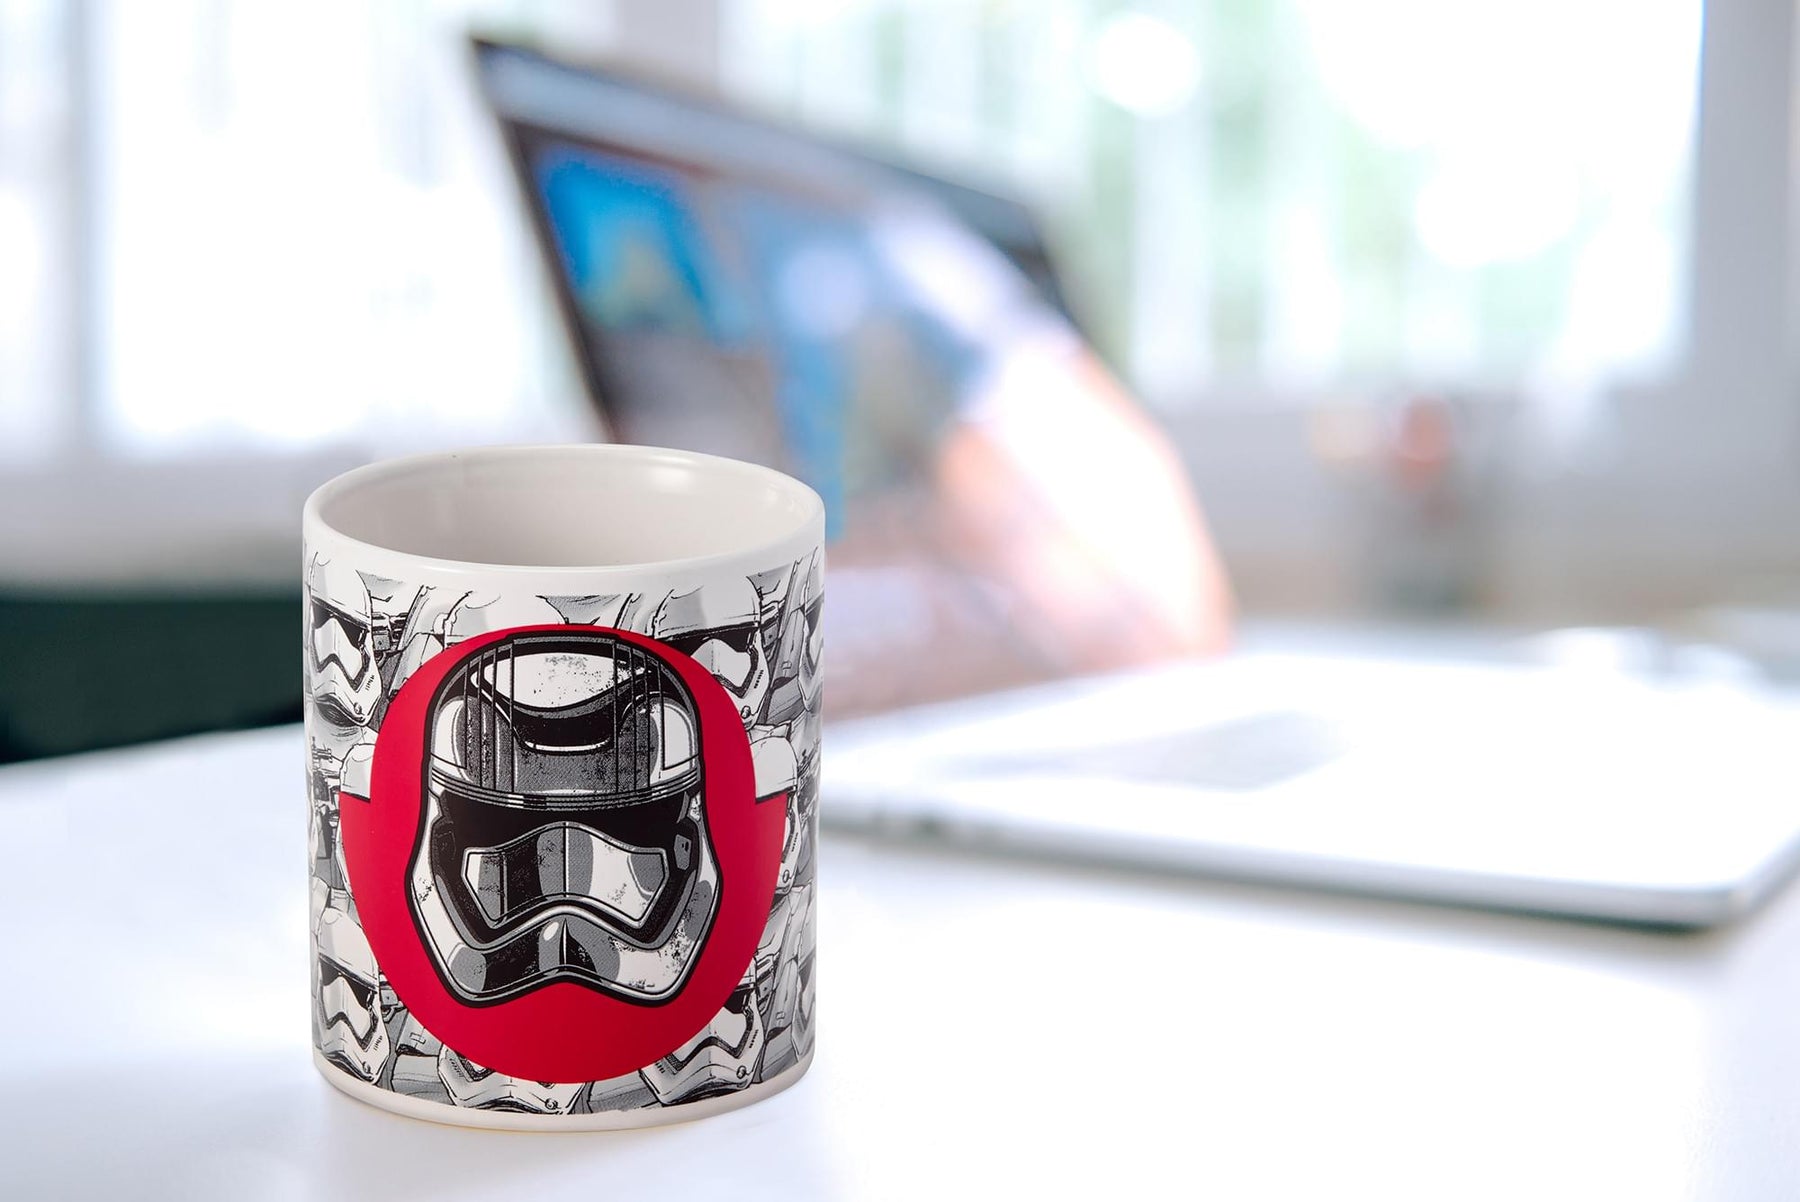 Star Wars Stormtroopers/Troop Leader - 11oz Heat-Reveal Ceramic Mug